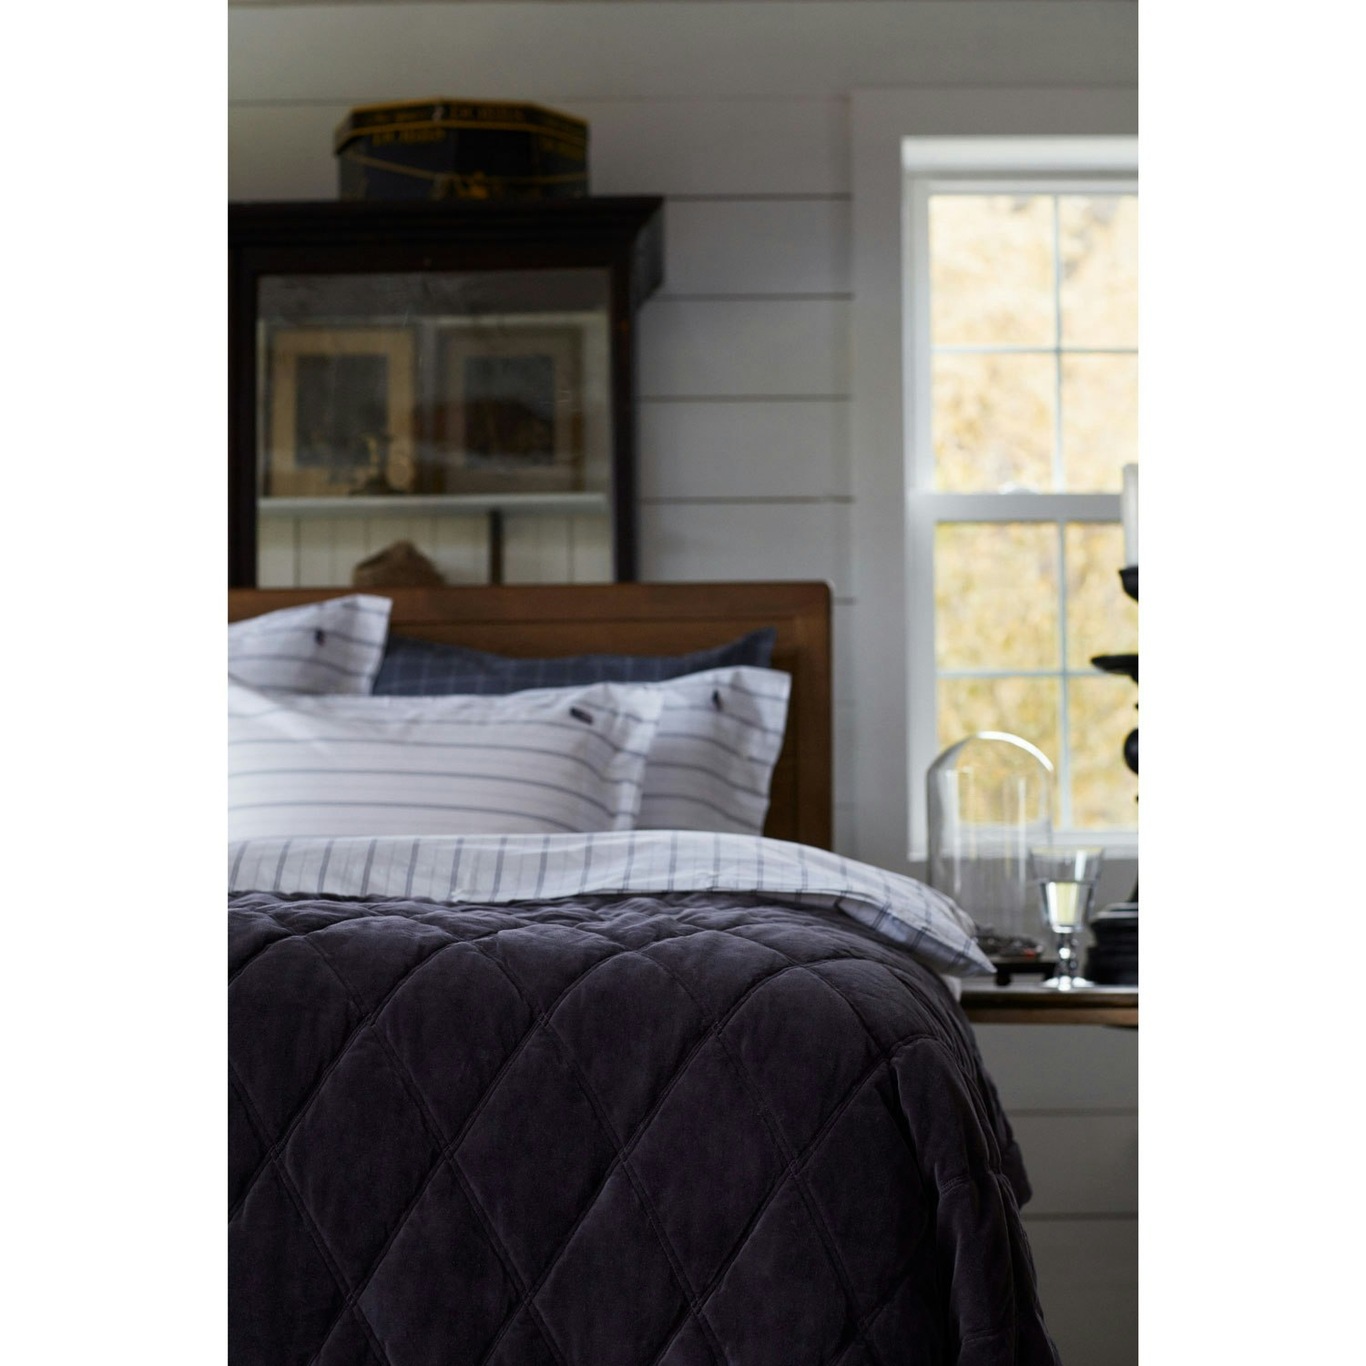 Quilted Organic Cotton Velvet Bedspread 260x240 cm, Beige - Lexington @